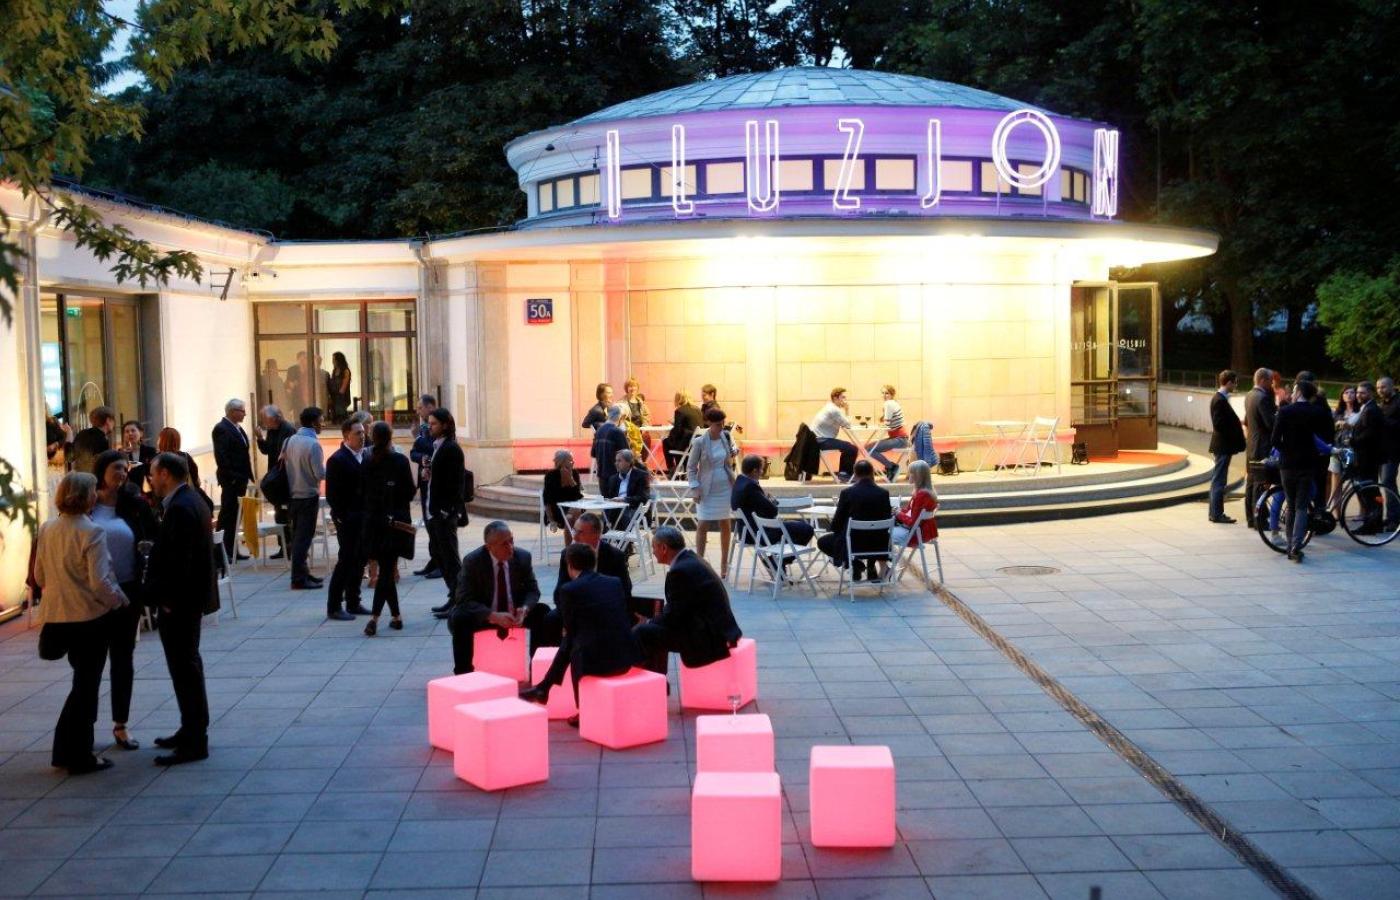 Nagrodę Architektoniczną drugiej edycji wręczyliśmy w pięknie odnowionym i klimatycznym Kinie Iluzjon w Warszawie.